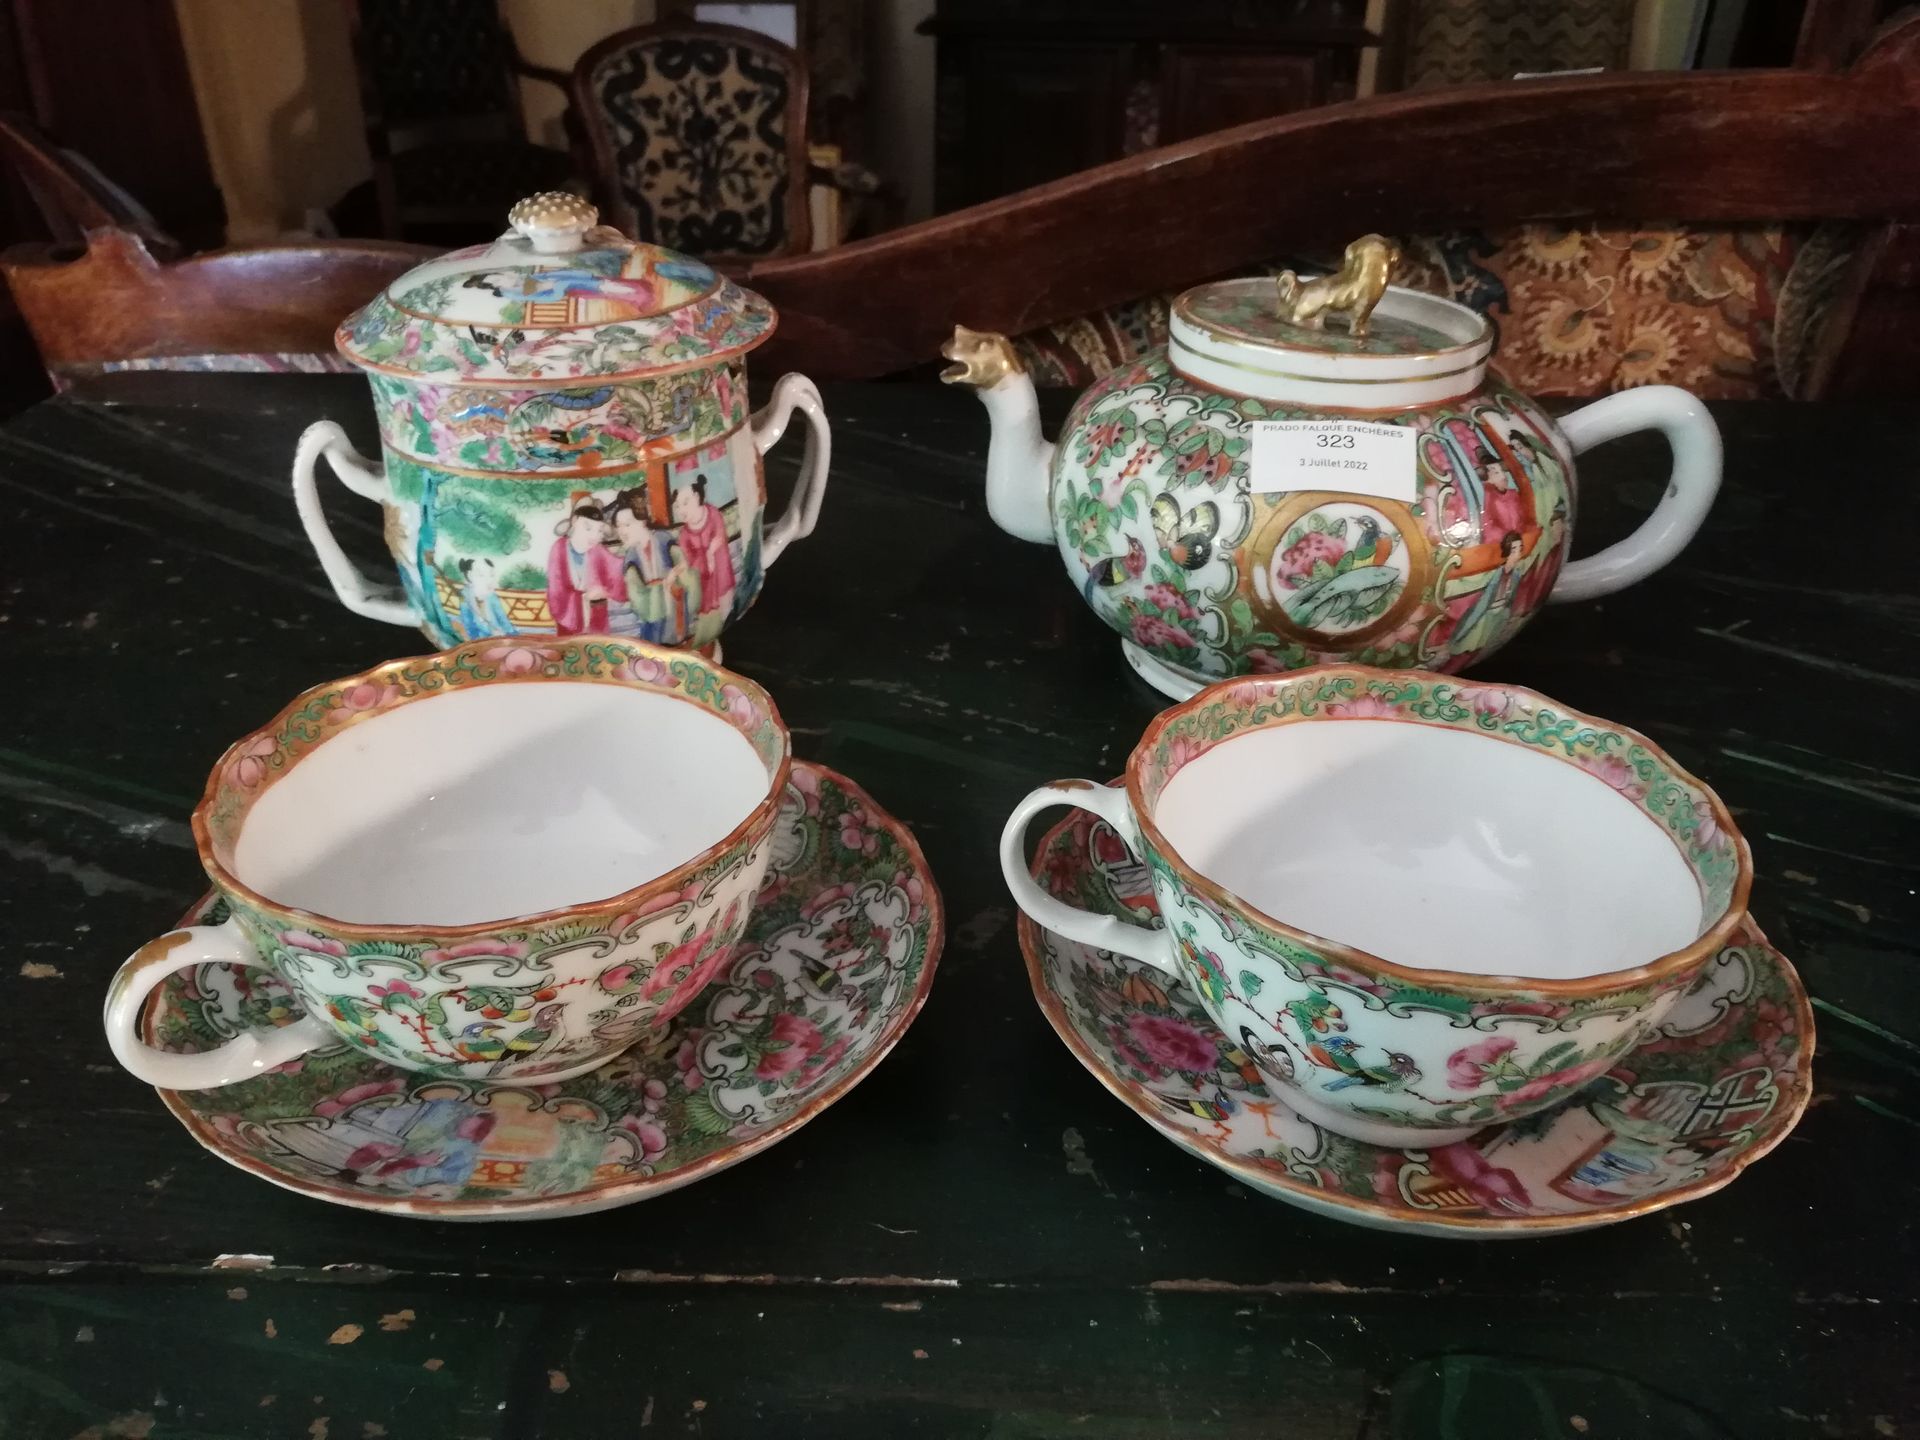 Null 中国，广东瓷器茶具的一部分，有宫廷场景装饰，由两个杯子和它们的茶托（一个杯子有裂缝），一个糖碗和一个茶壶组成。